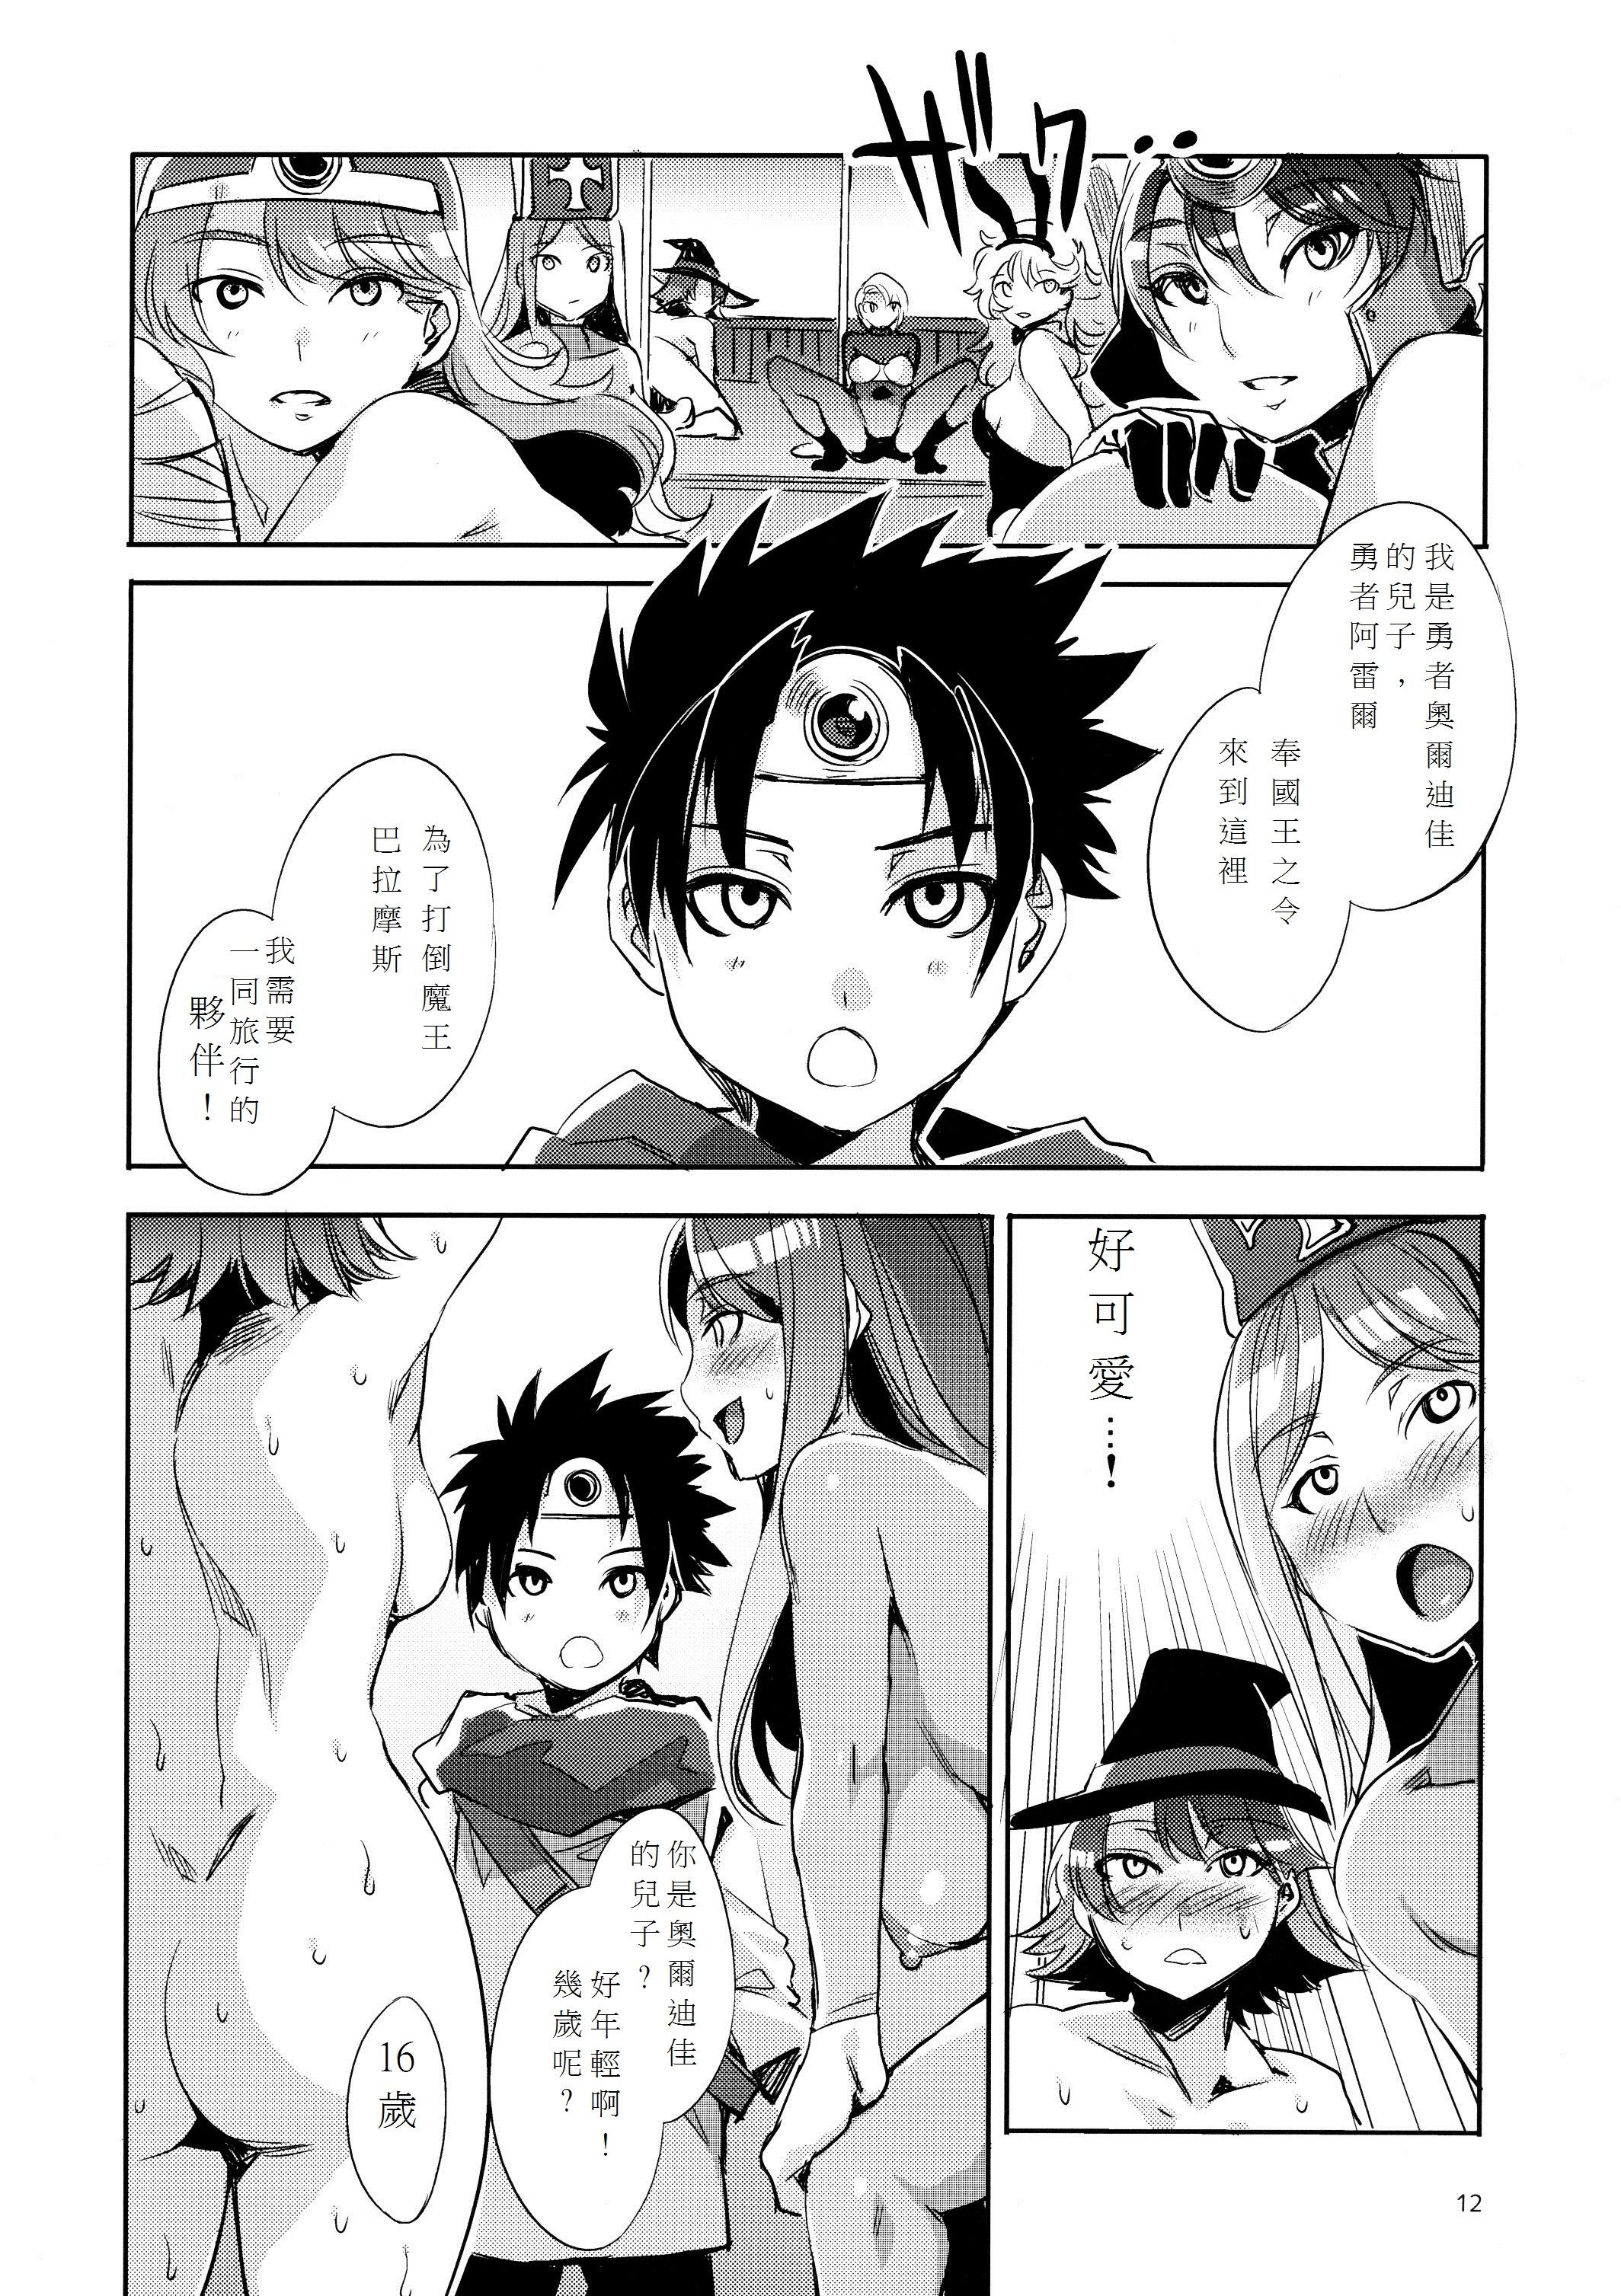 Glasses DQ Ero Dance!! - Dragon quest iii Humiliation - Page 12